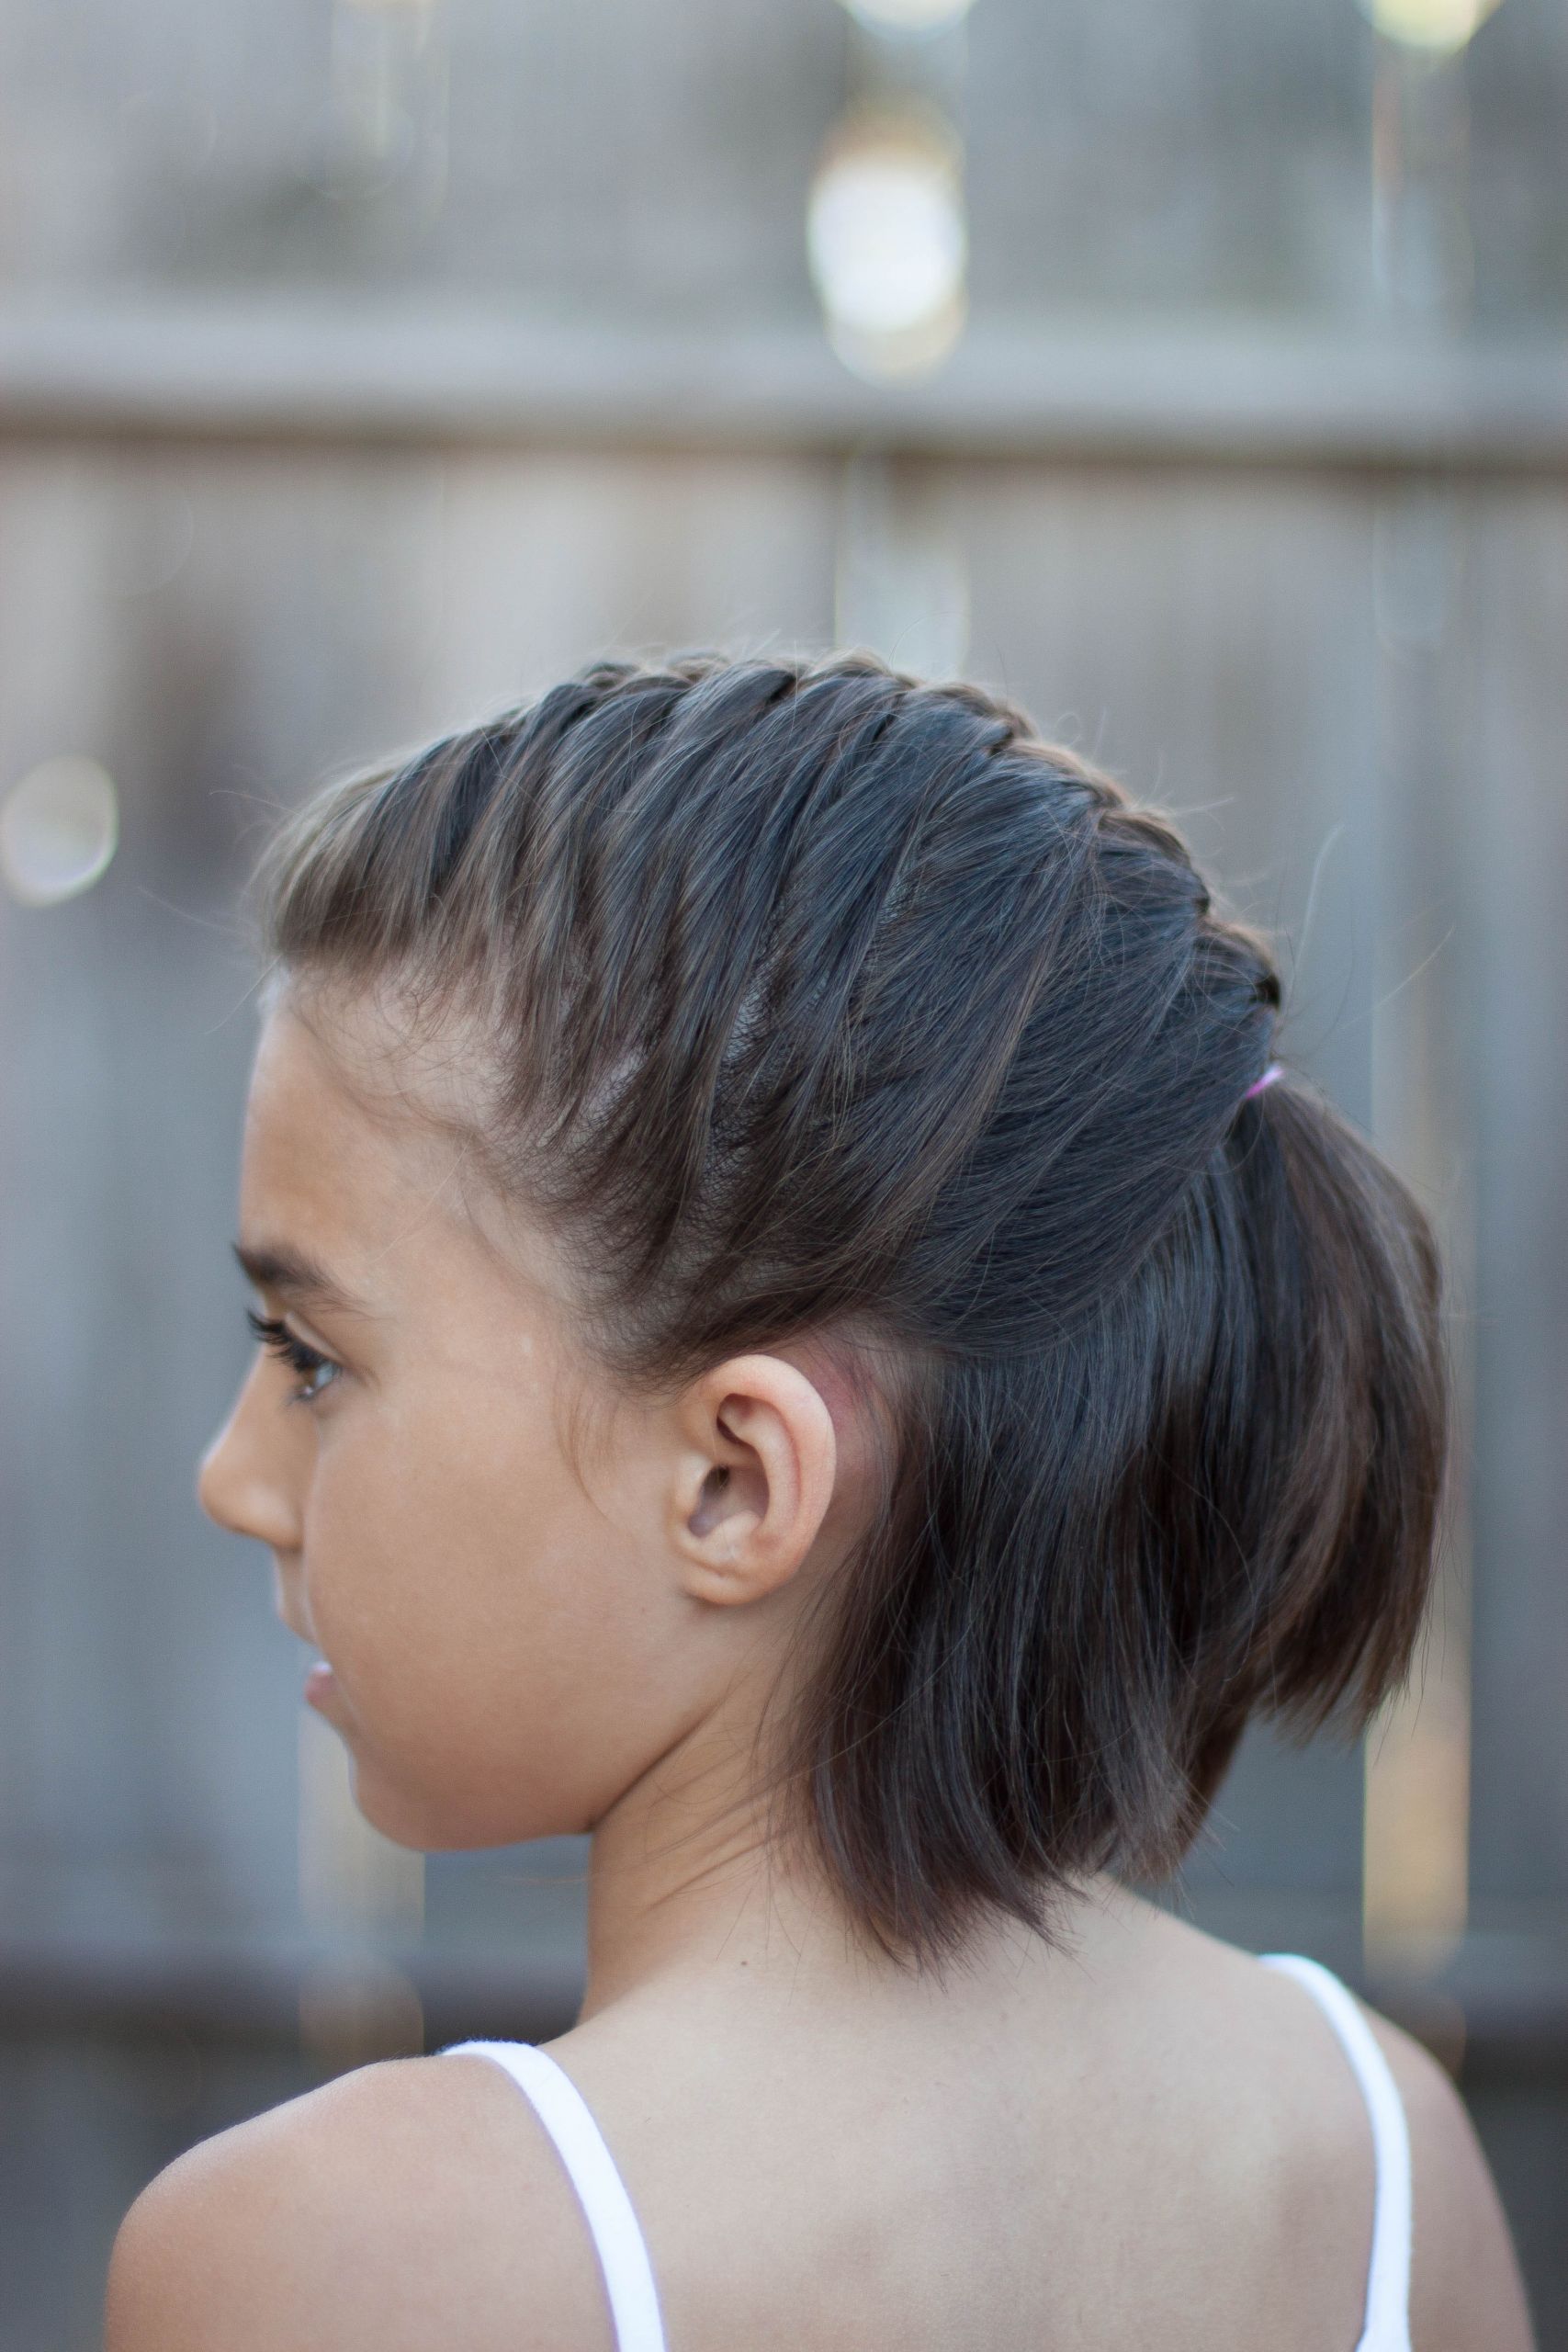 Easy Little Girl Hairstyles For Short Hair
 2019 Popular Updo Hairstyles For Little Girl With Short Hair